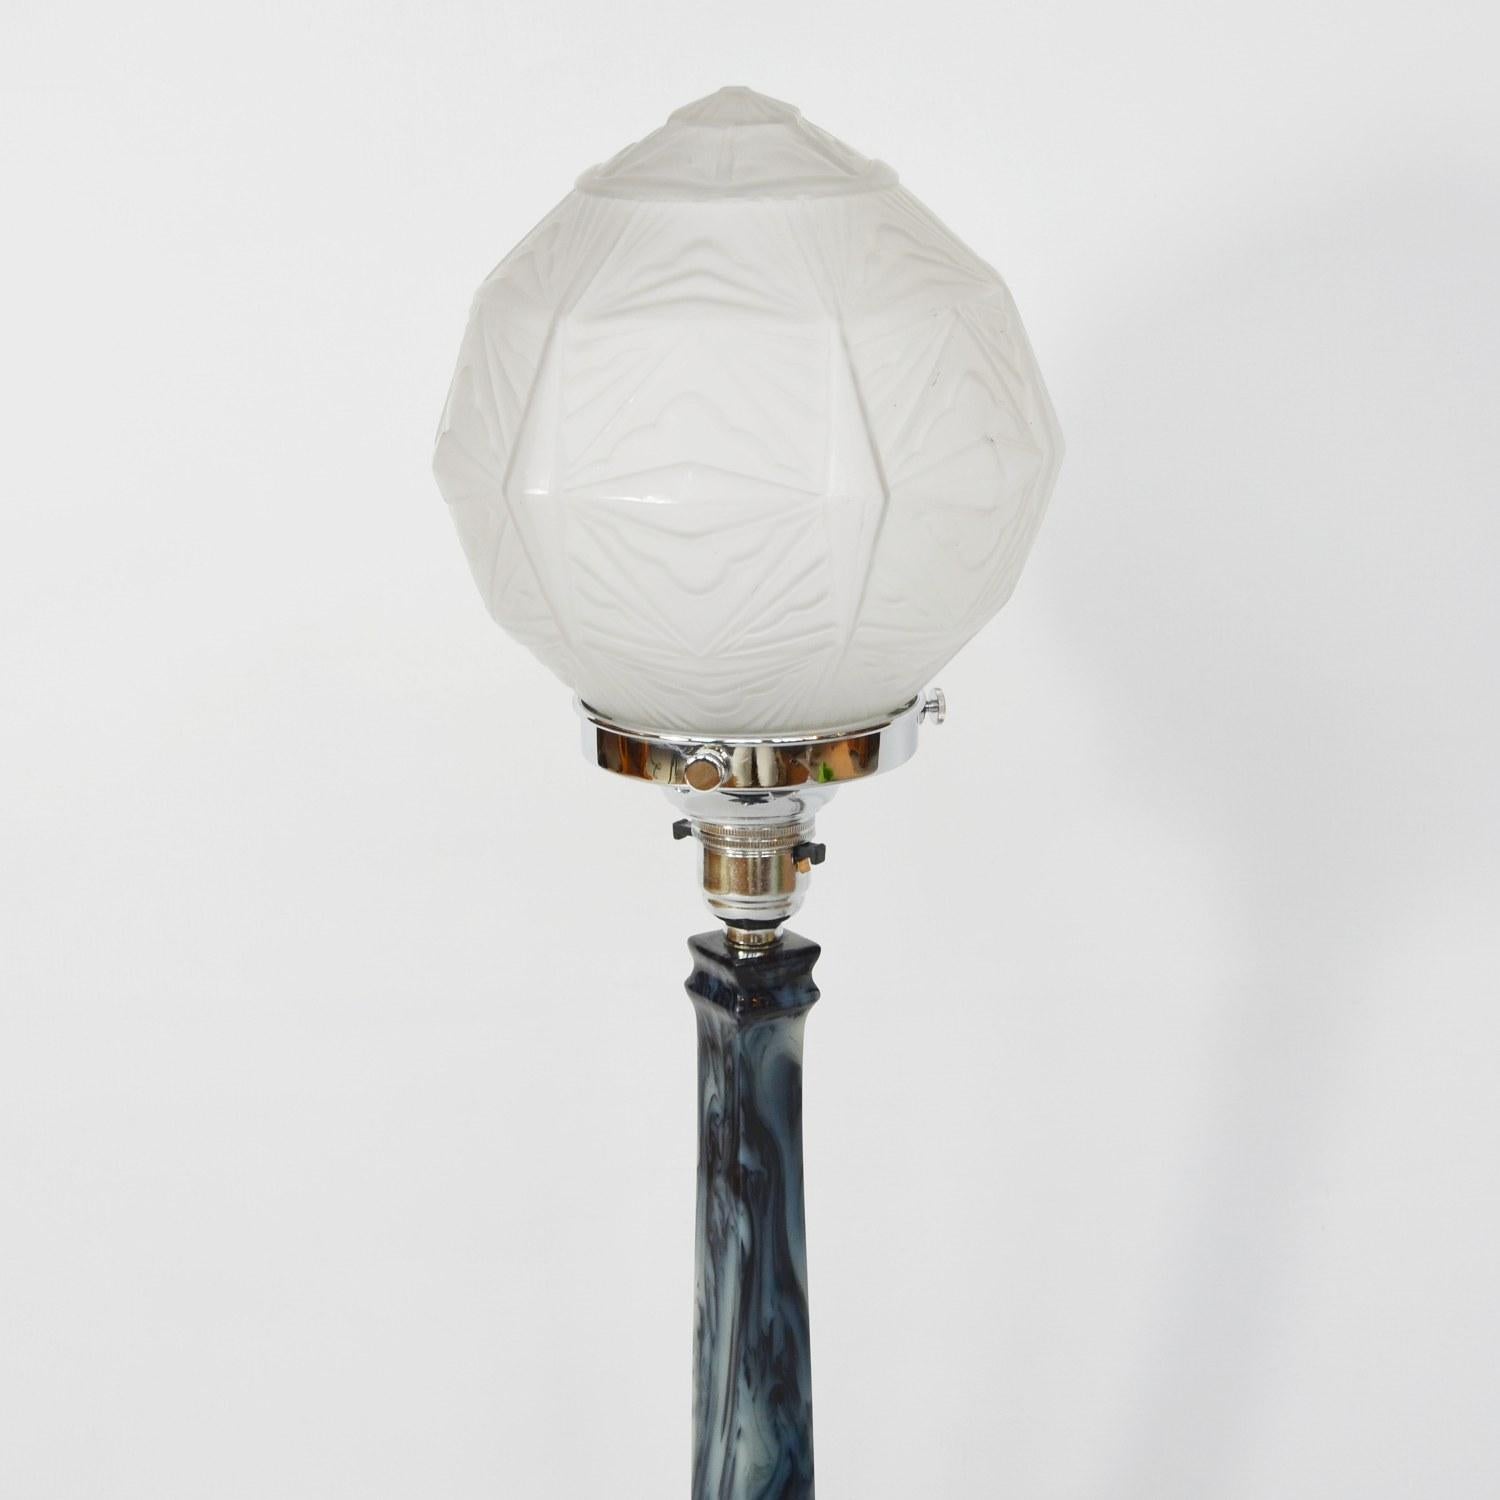 Eine Art-Deco-Tischlampe. Blau-weiß marmorierter Catalin-Stiel und -Sockel, mit facettenreichem, mattiertem Kugelschirm.

Abmessungen: H 20 cm, B 12,5 cm

Herkunft: Englisch

Artikel Nr.: 210204

Alle unsere Beleuchtungen sind komplett